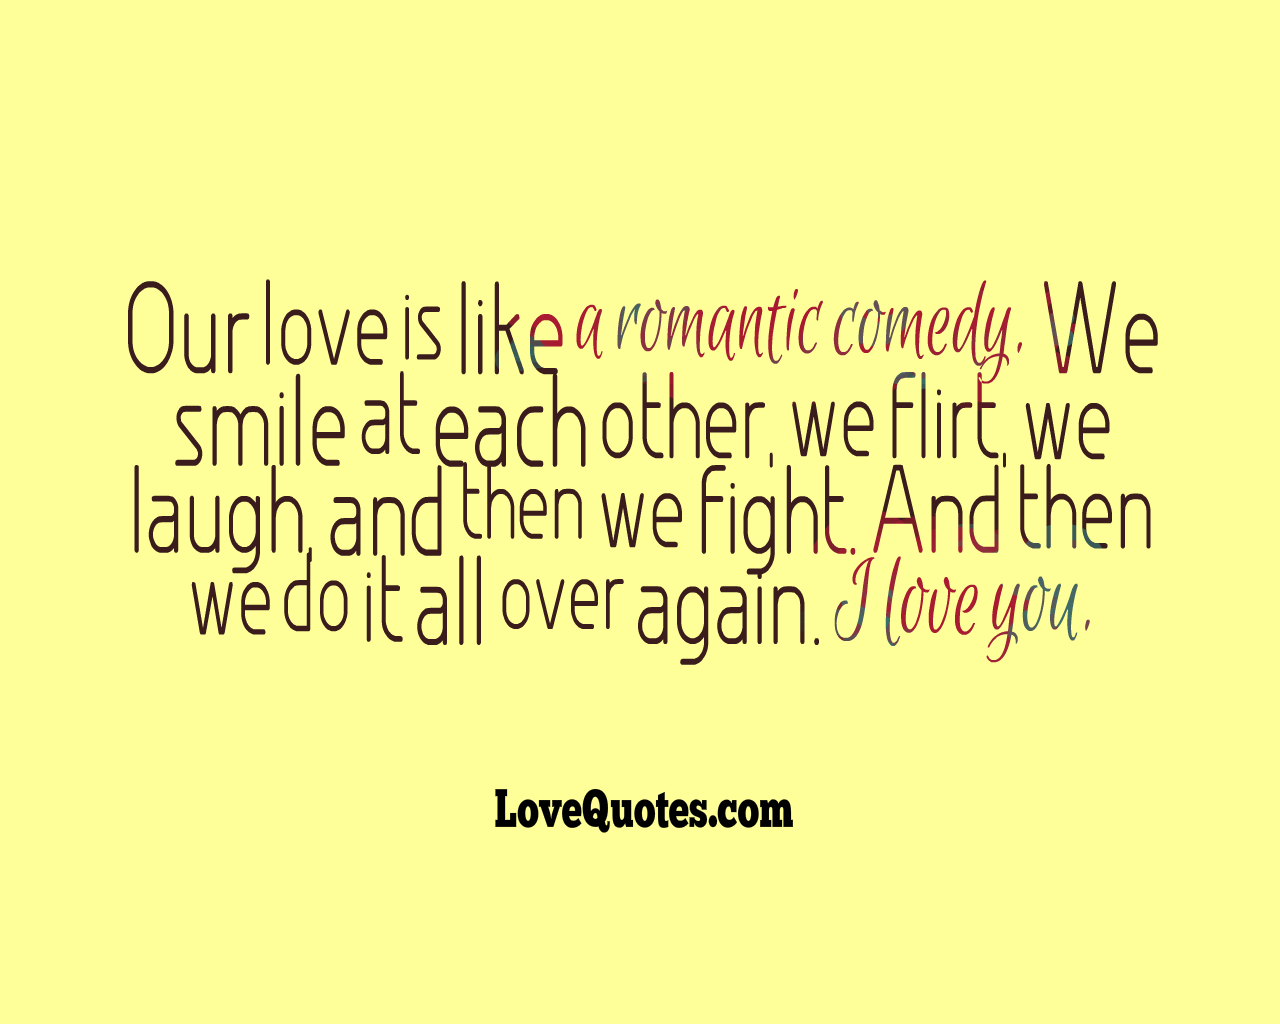 A Romantic Comedy